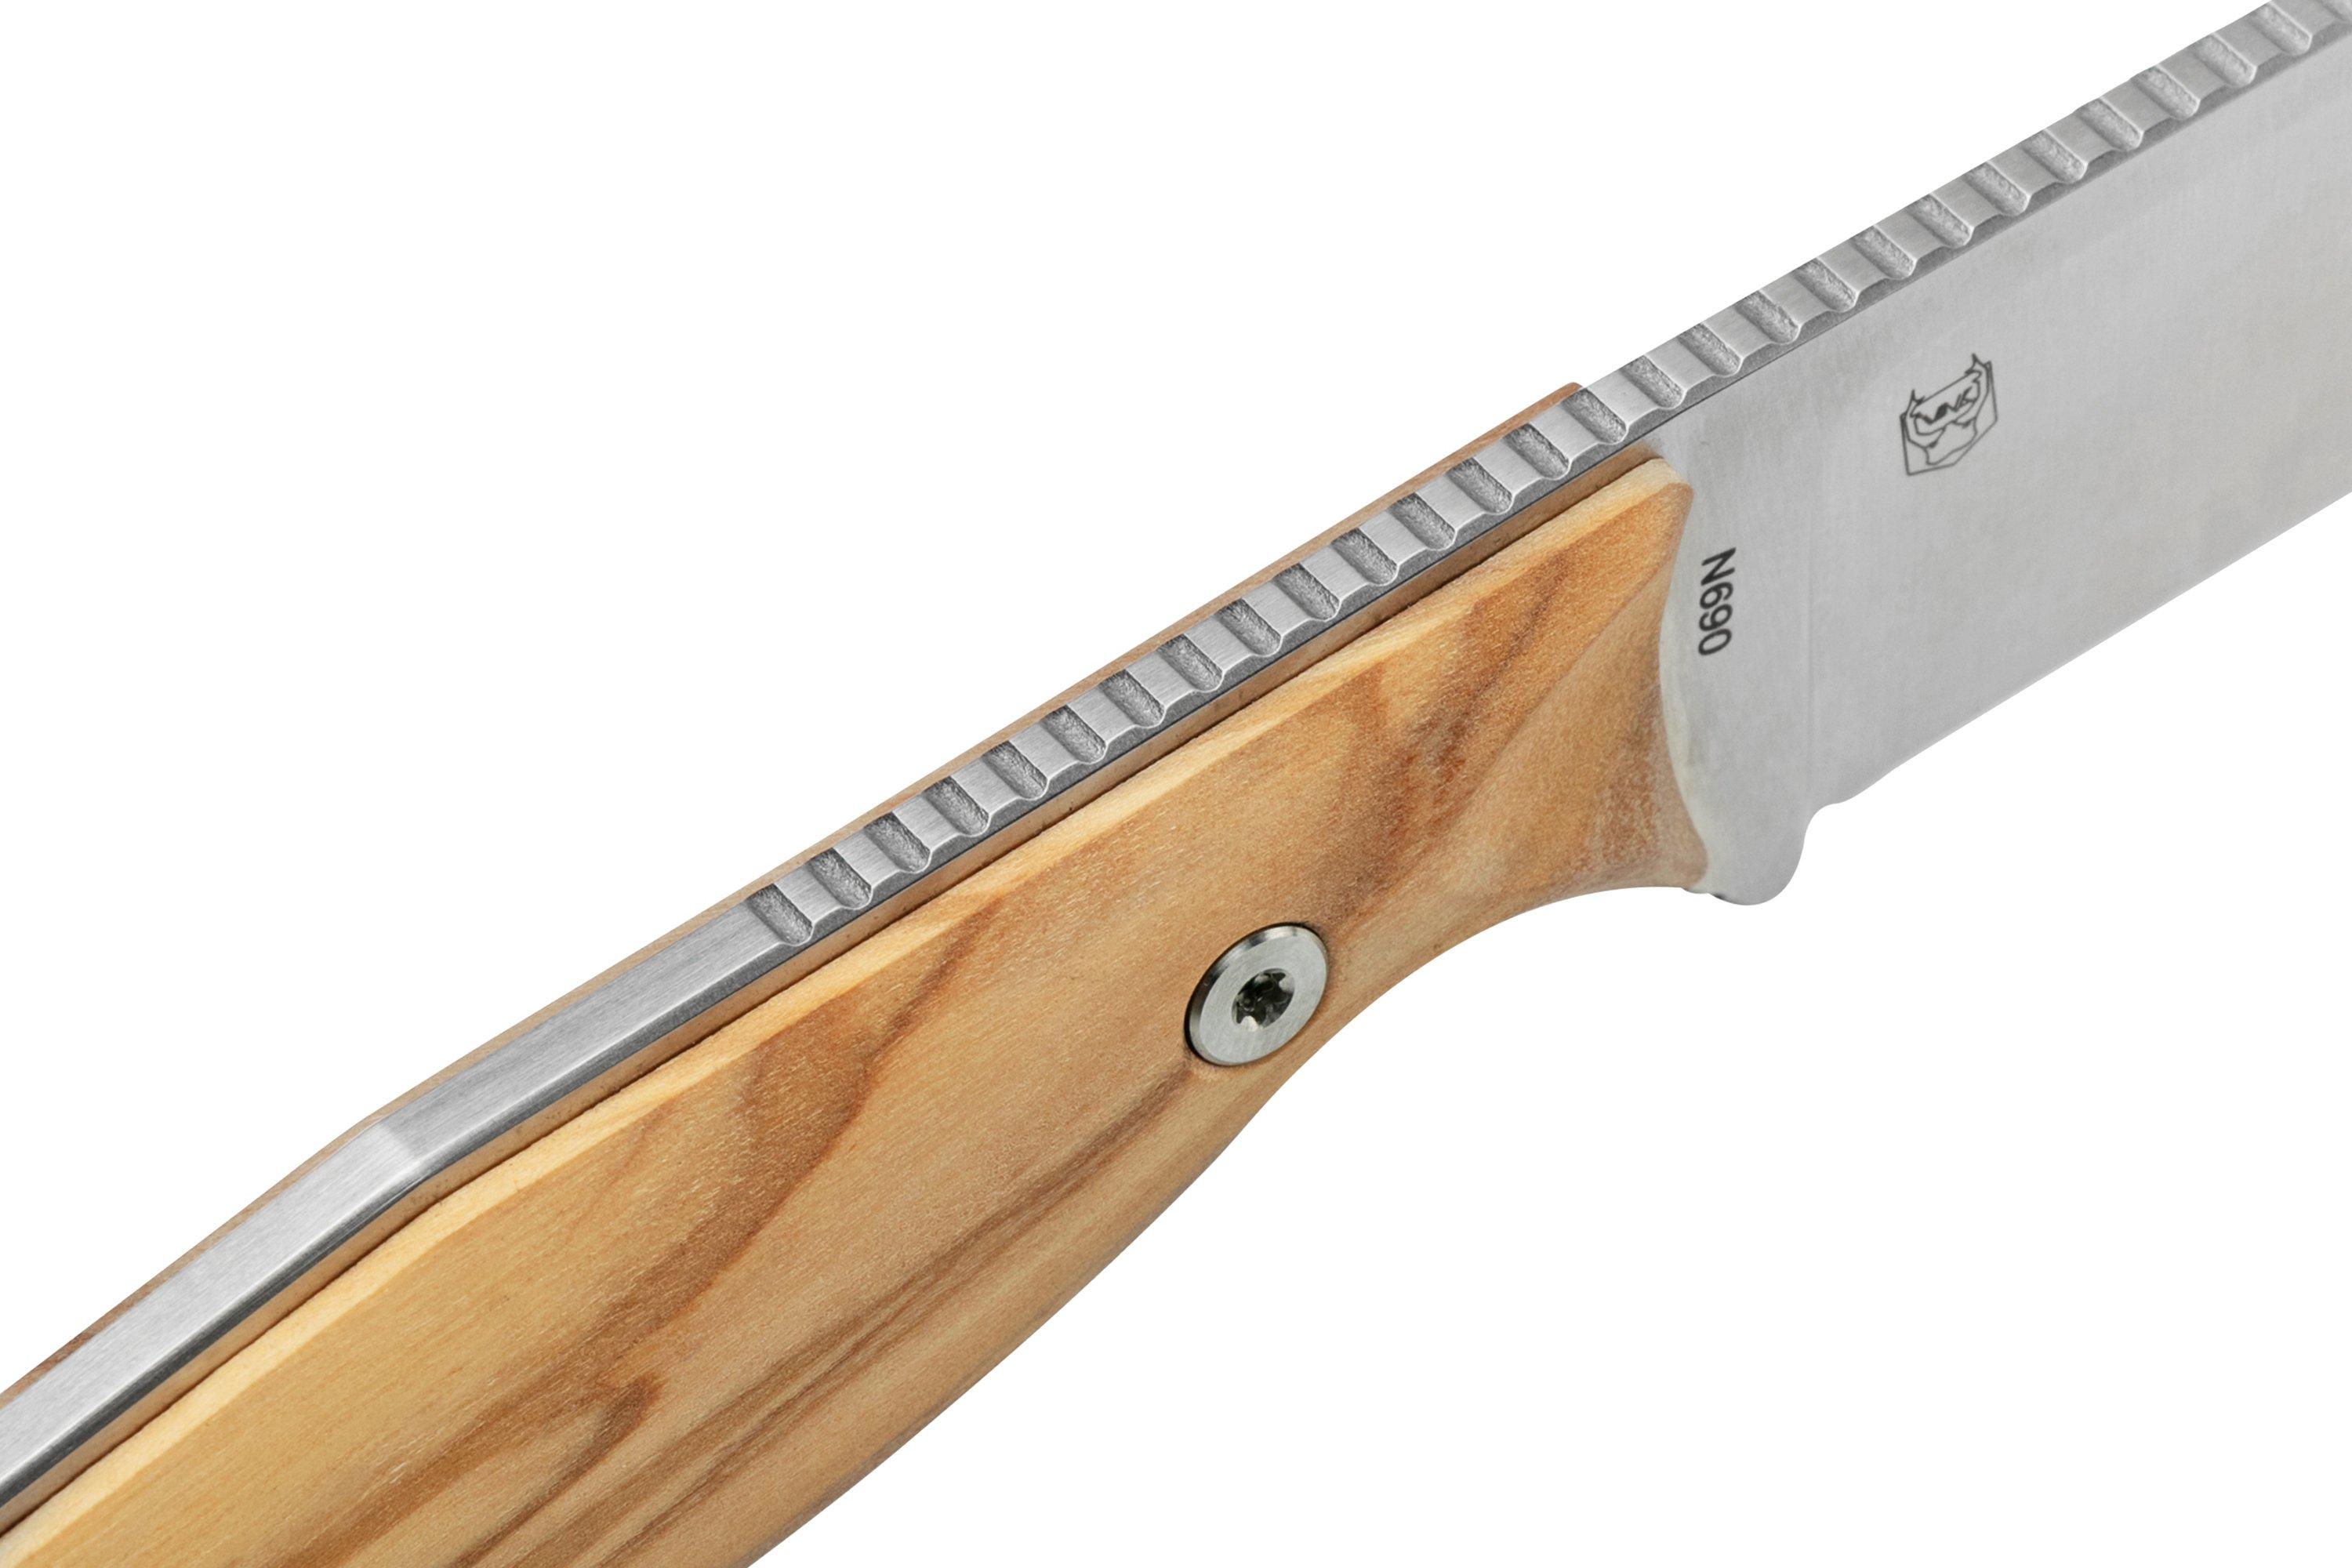 Harpoon Olive feststehendes Wood Günstiger Messer, Braginets 3612W Furrier Steel bei Real Ivan | Design shoppen